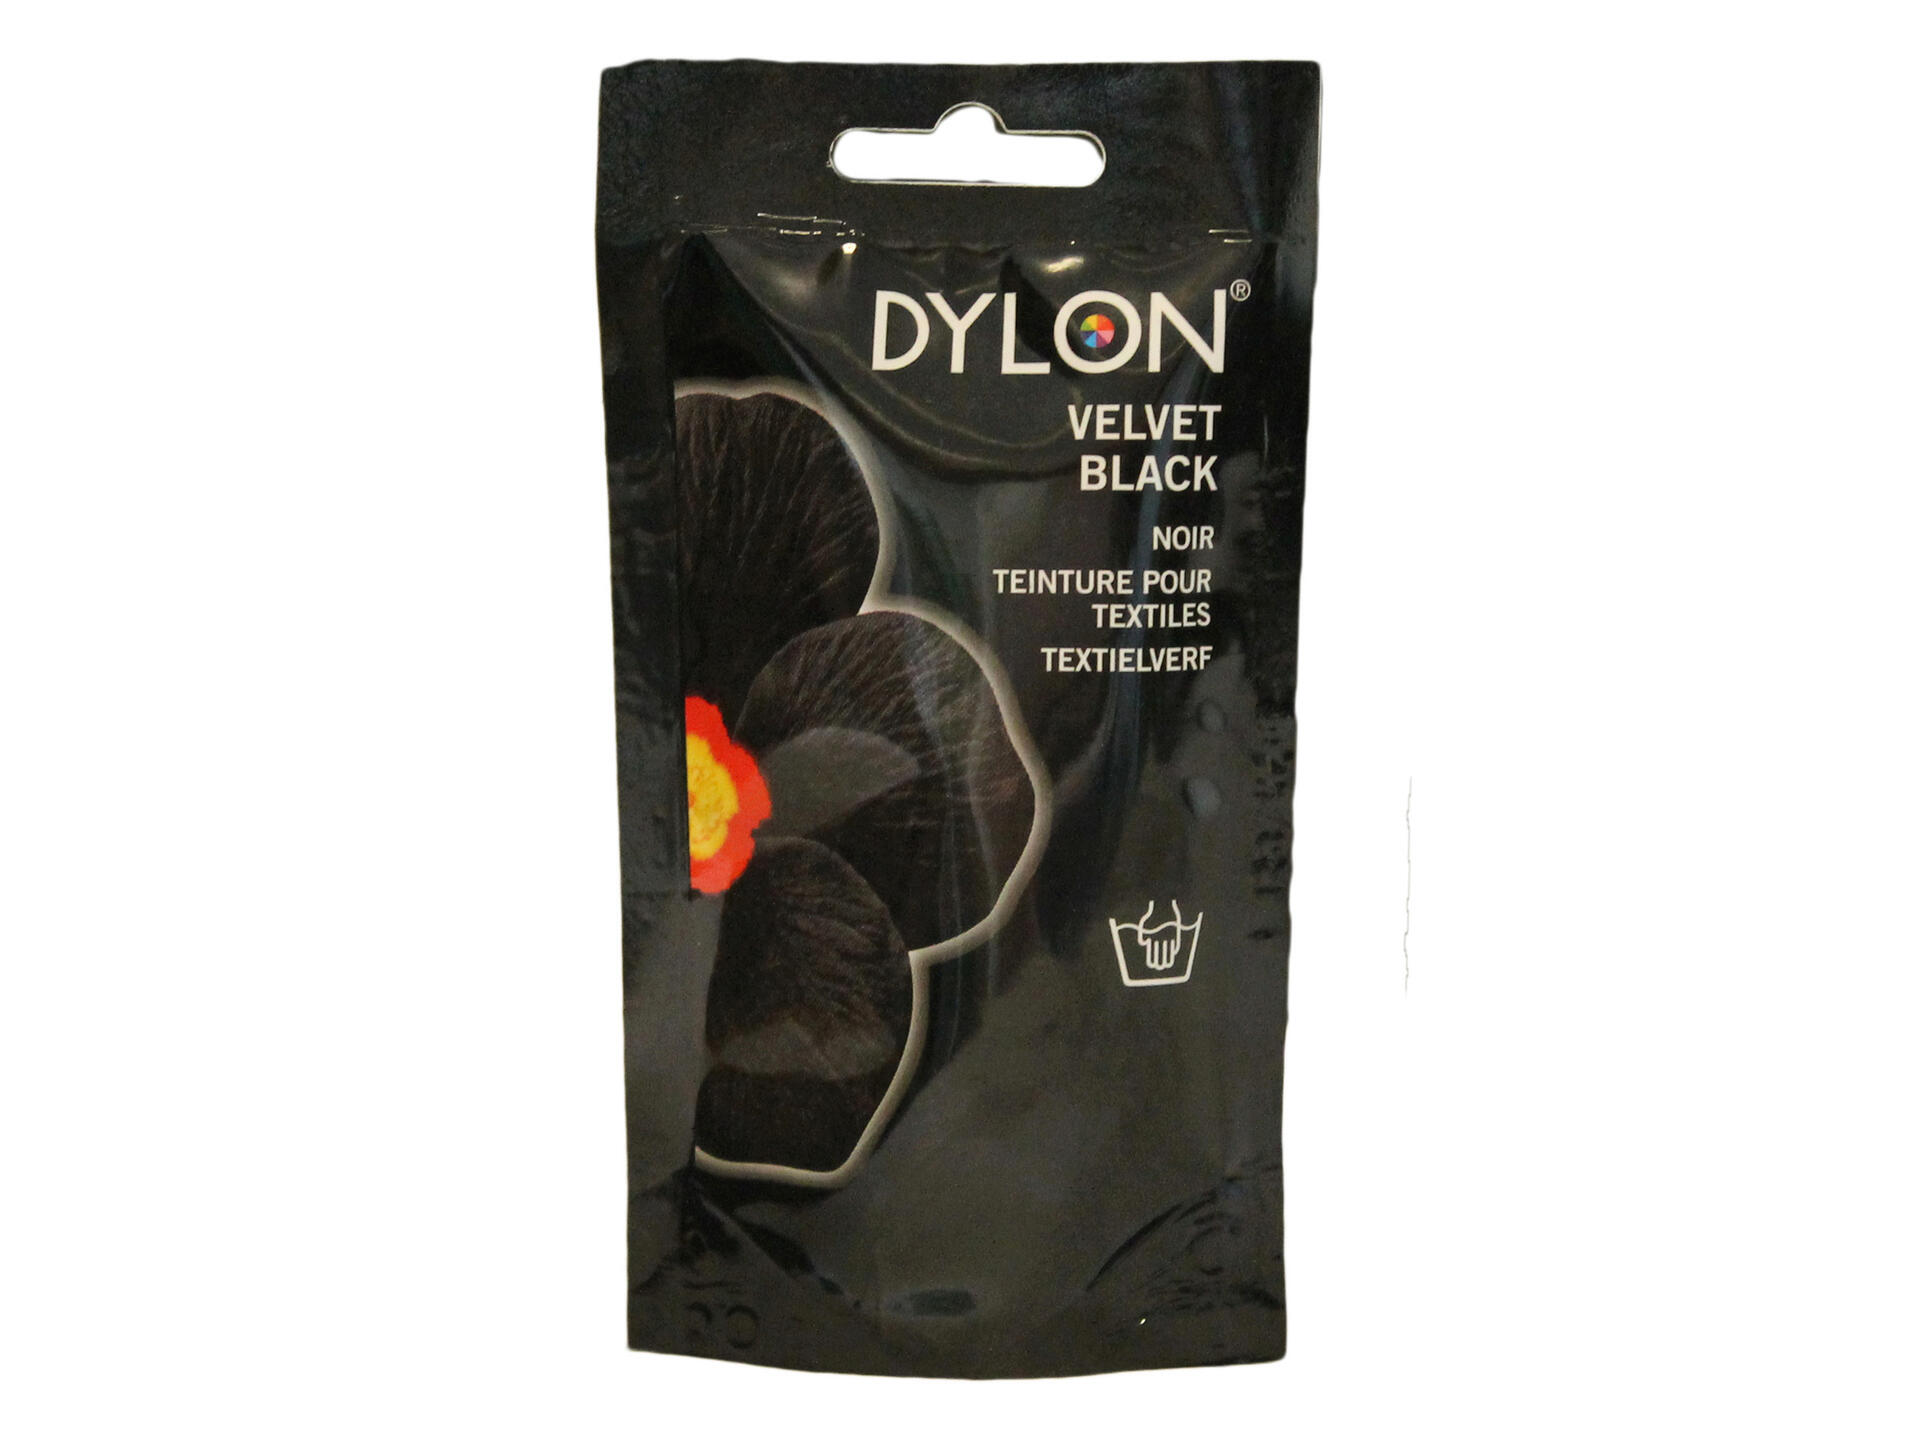 Dylon teinture textile 50g lavage à main velvet black